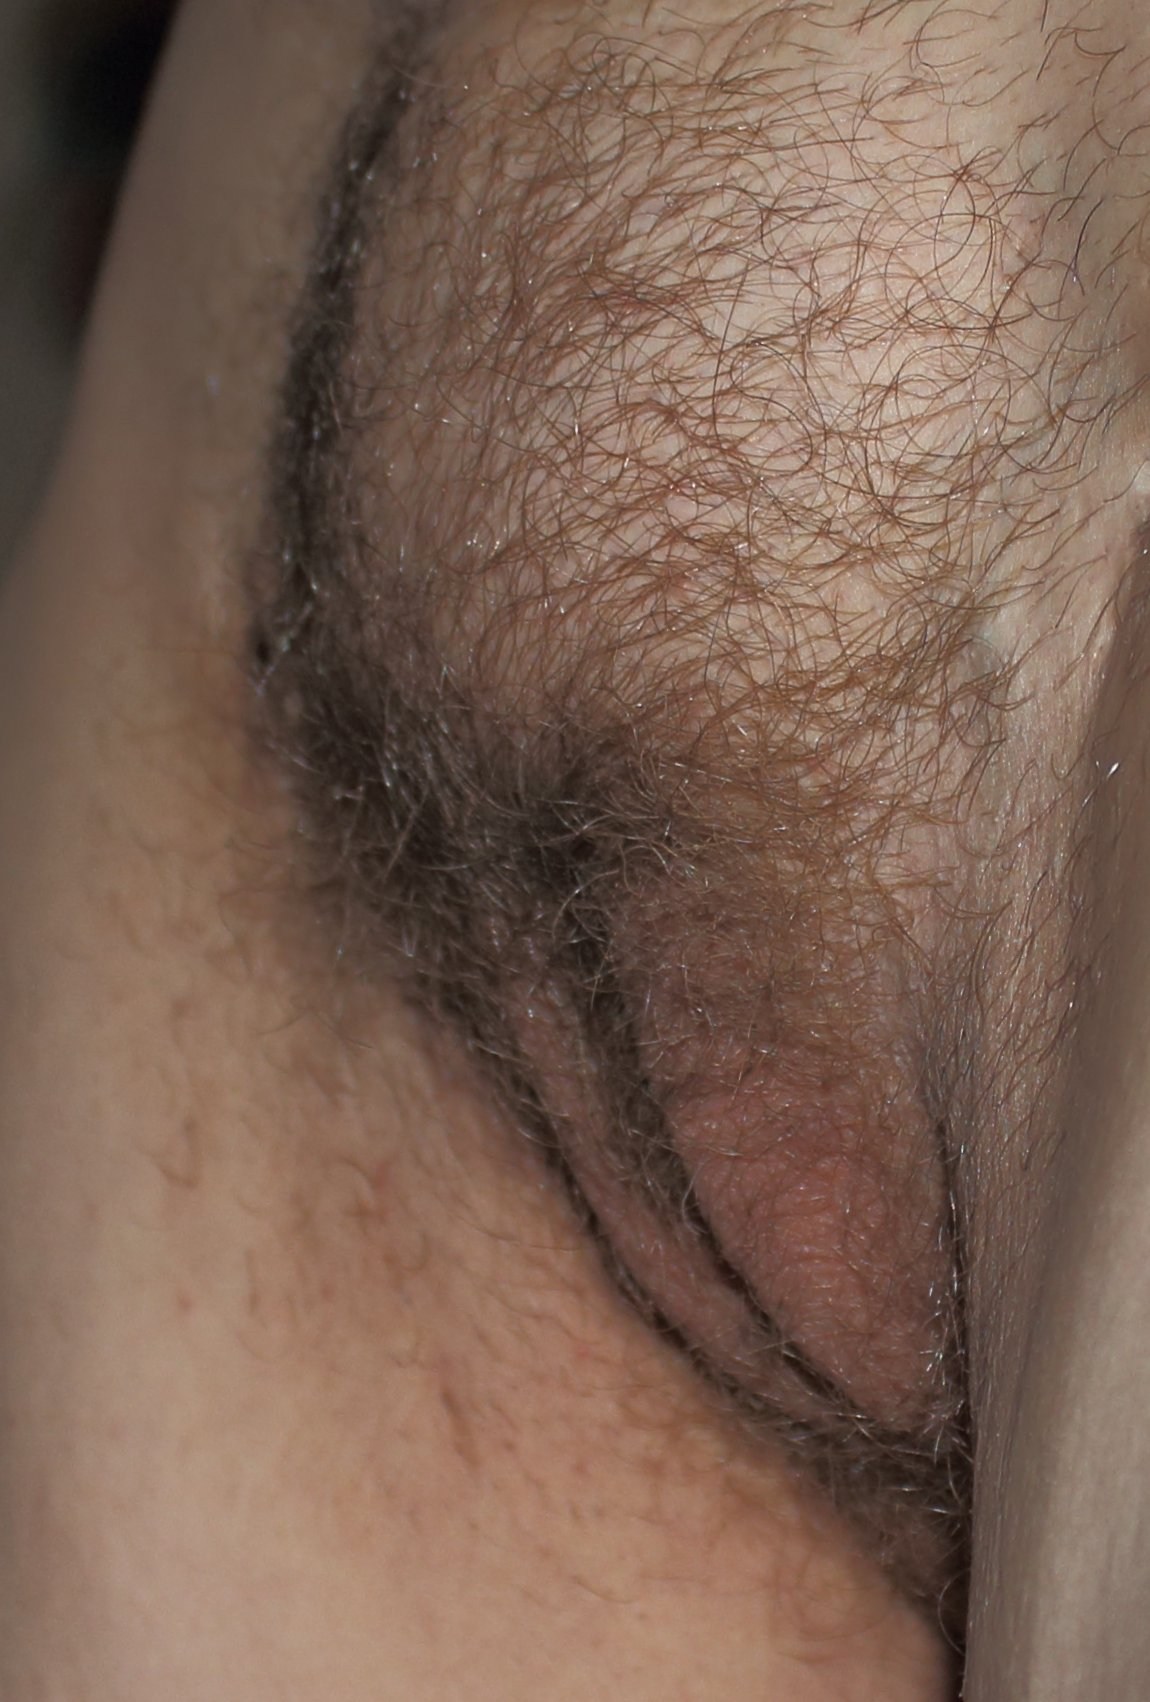 Porn First Pubic Hairs (71 photos)